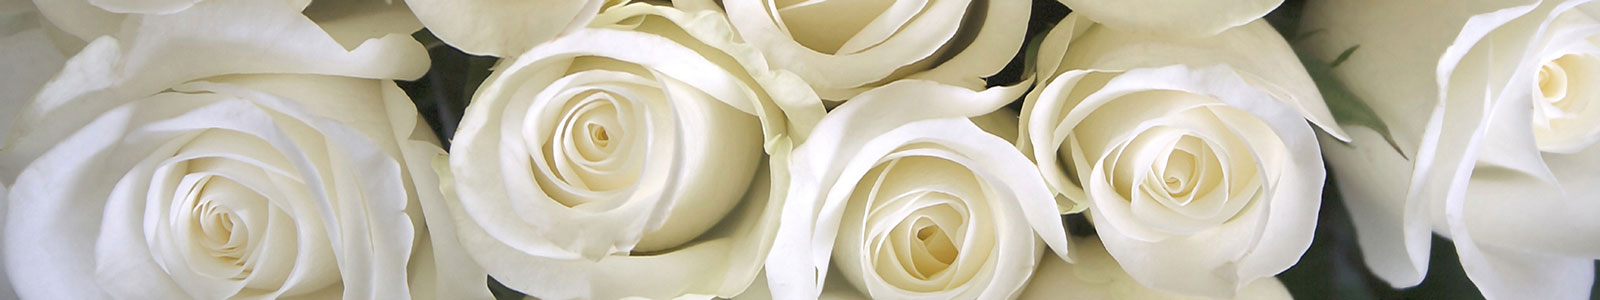 №853 - Просто прекрасные белые розы